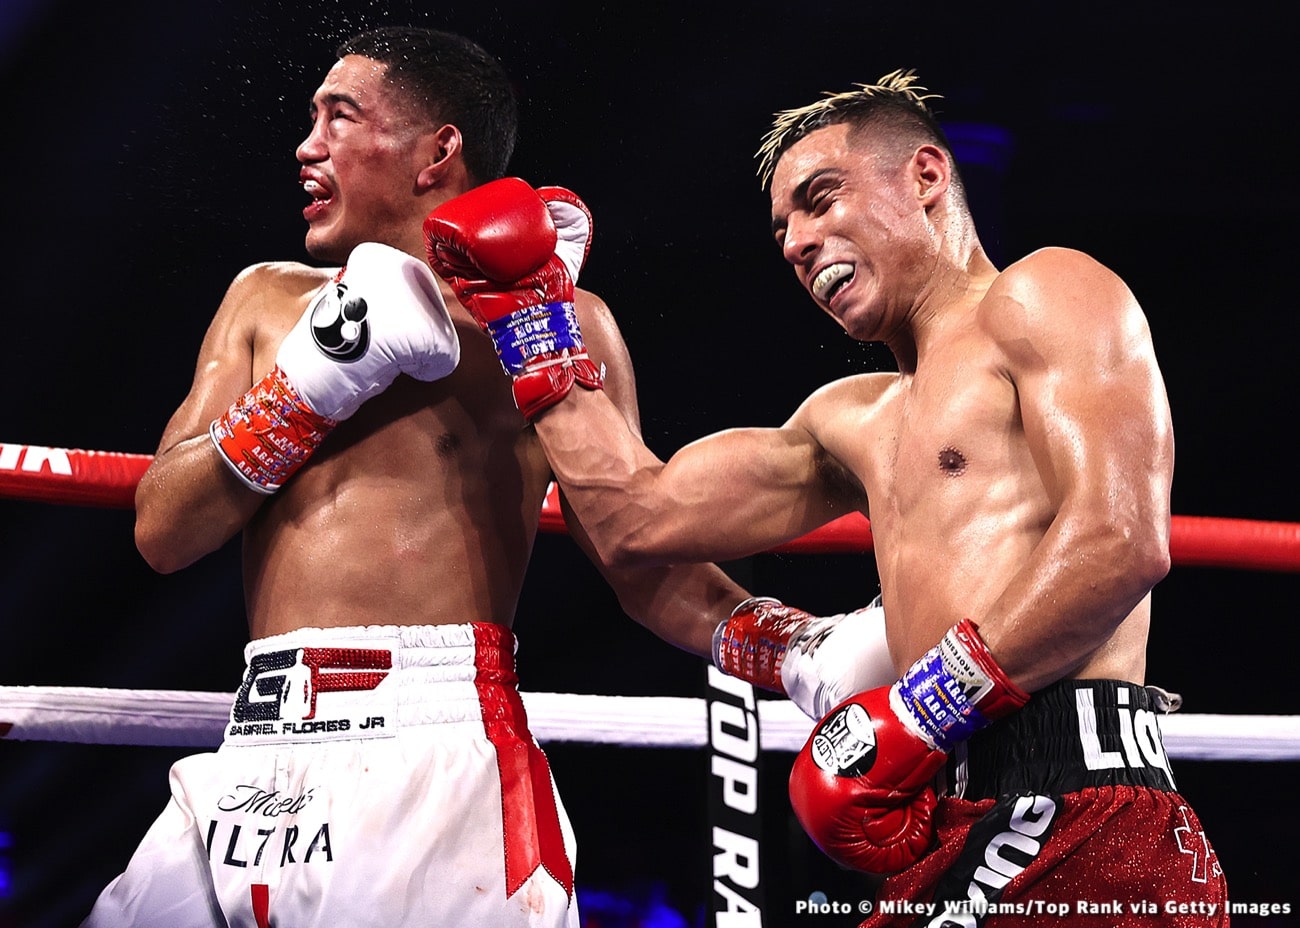 Gabriel Flores Jr boxing image / photo